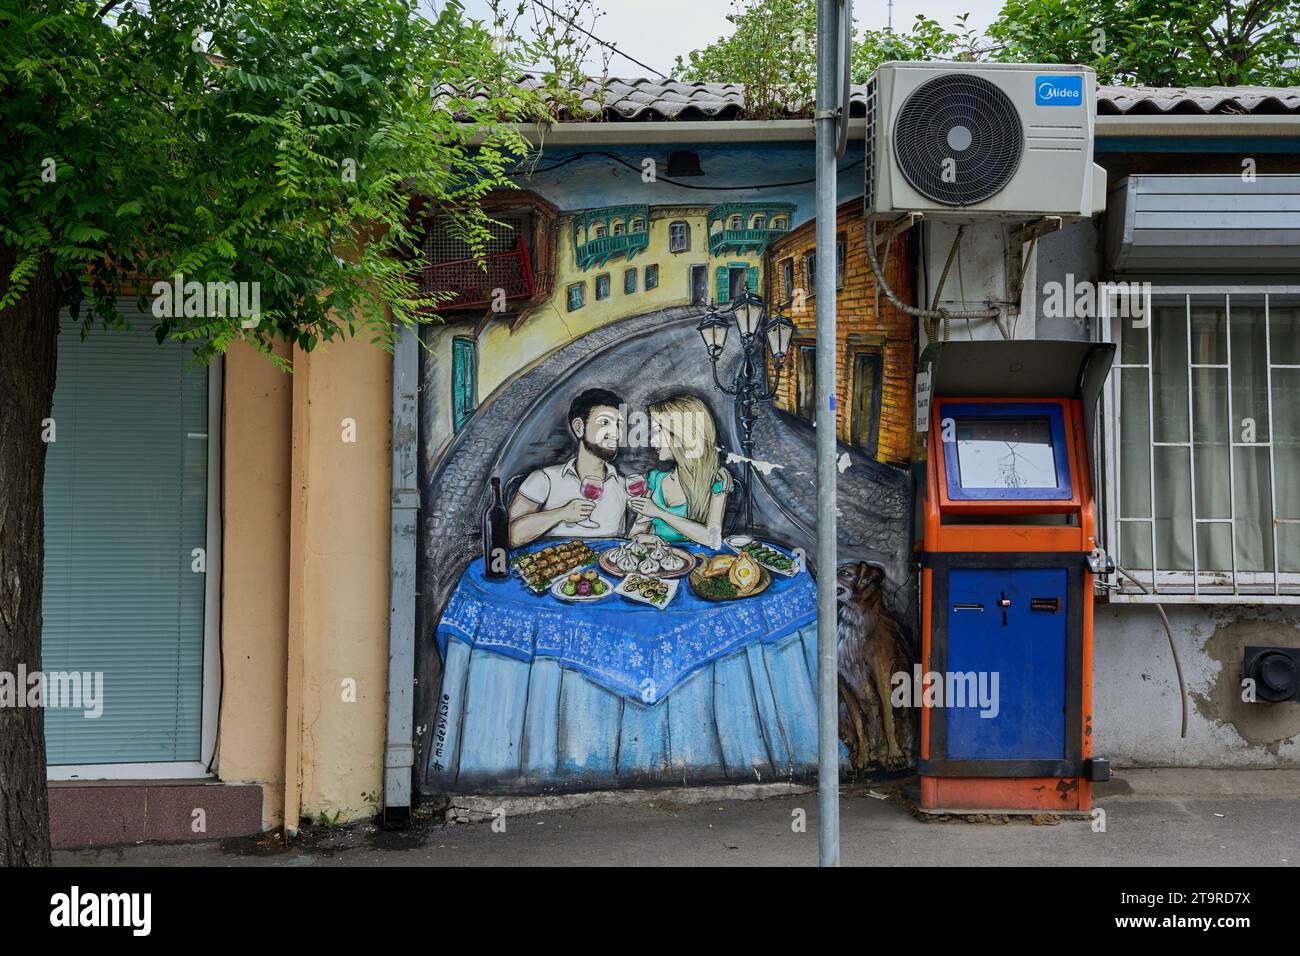 Grafitto, junges Paar beim Essen, typisch georgische Speisen, Bankomat, Stadtteil Awlabari, armenisches Viertel, Avlabari, Tiflis, Georgien Foto Stock